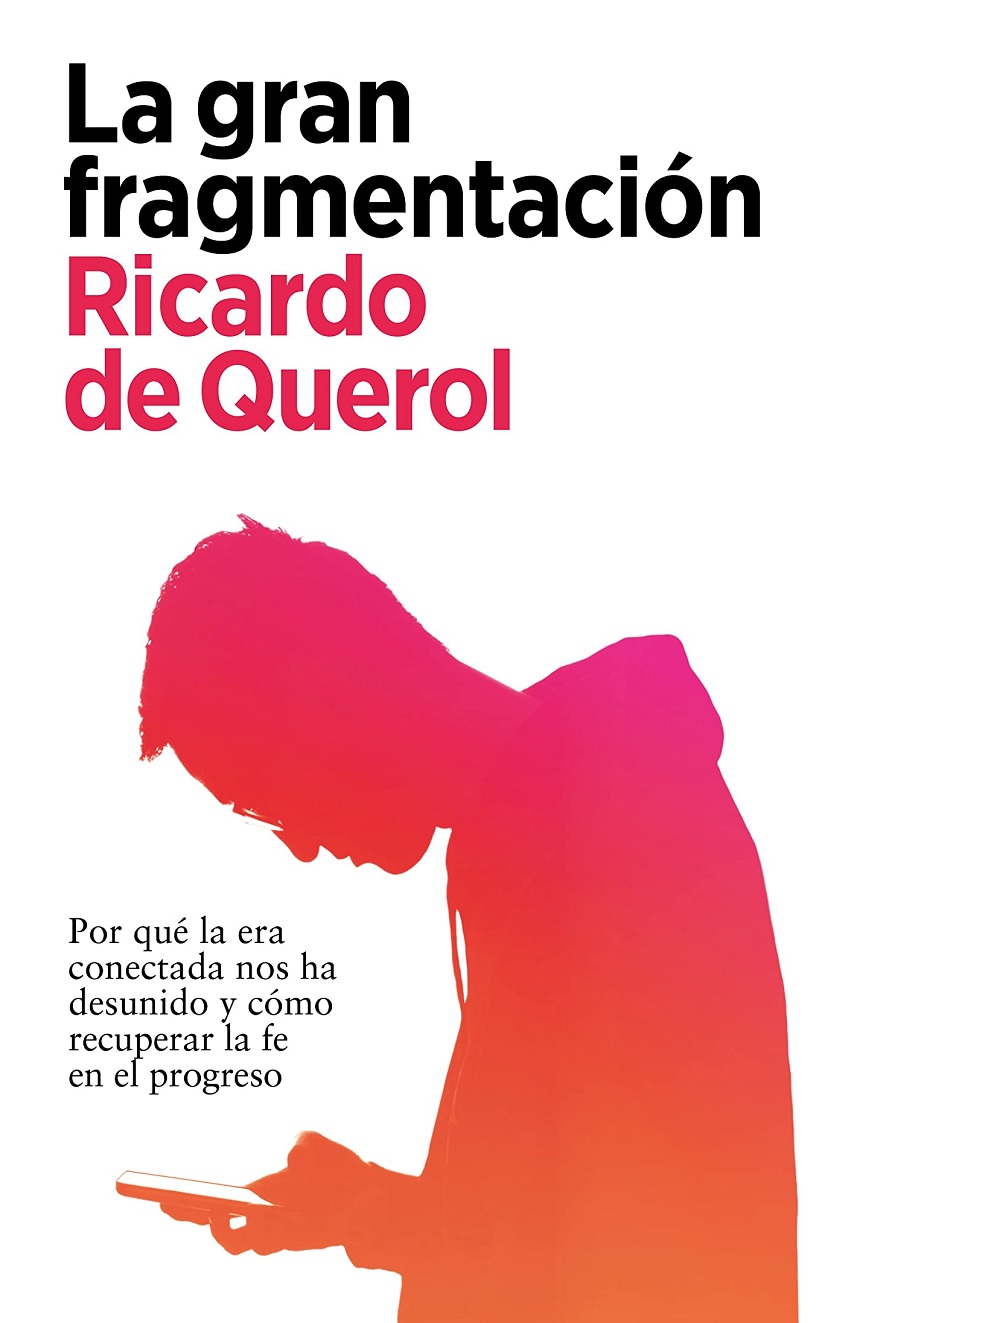 La Gran Fragmentación de Ricardo de Querol en ARPA Editores. Un libro sobre la era digital y fenómenos como las criptomonedas, la inteligencia artificial o las redes sociales